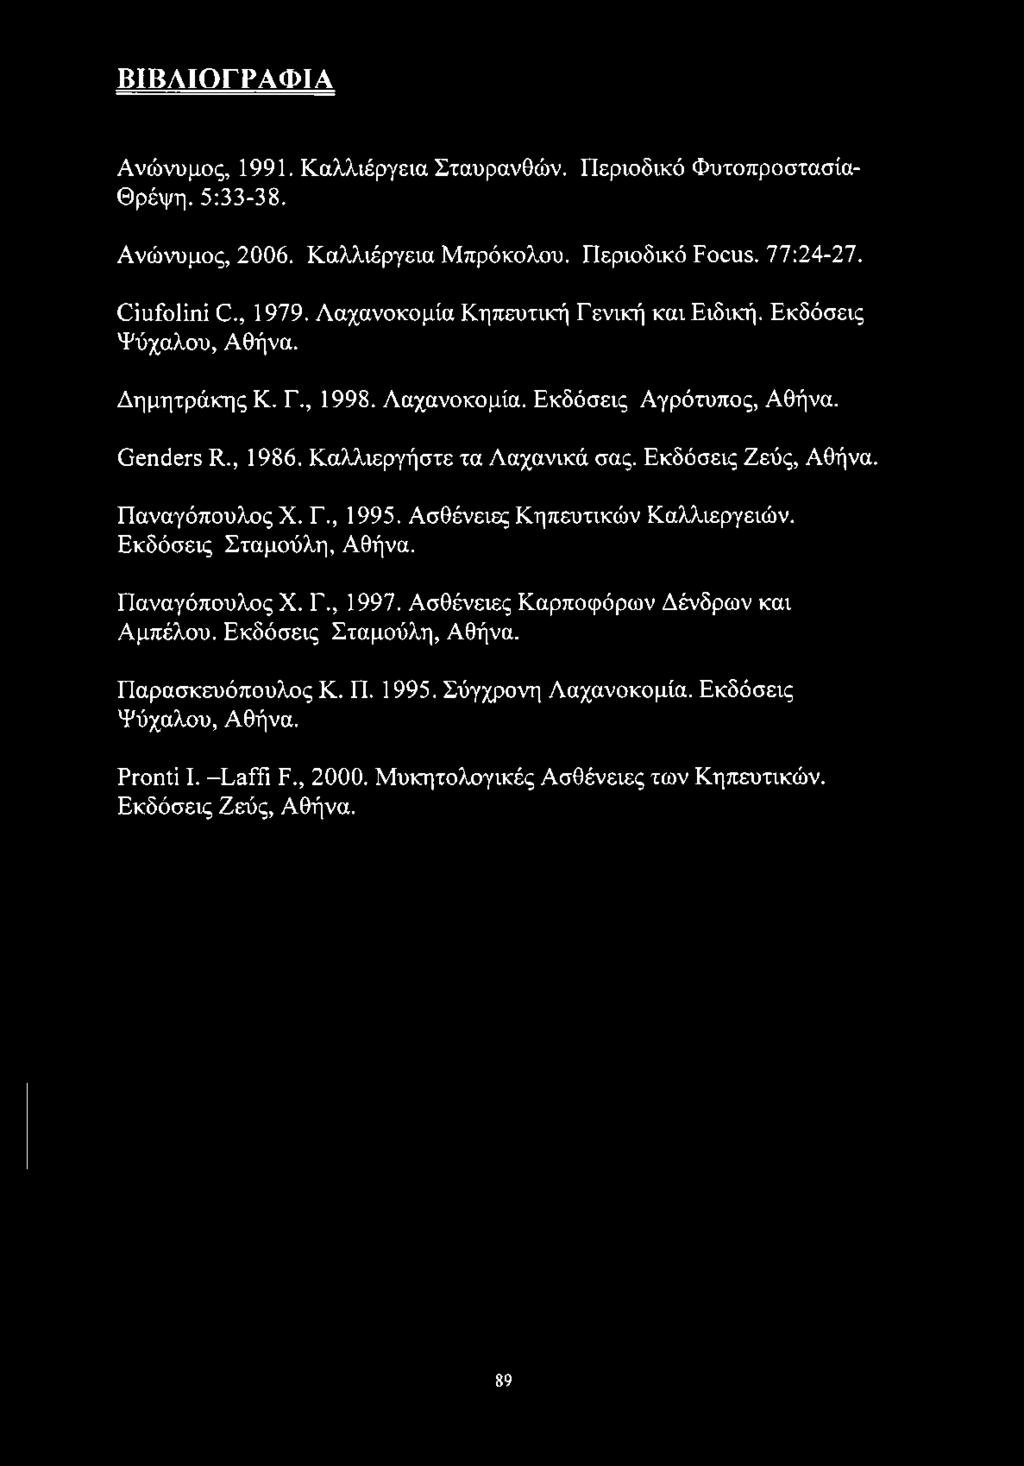 Εκδόσεις Ζεύς, Αθήνα. Παναγόπουλος X. Γ., 1995. Ασθένειες Κηπευτικών Καλλιεργειών. Εκδόσεις Σταμούλη, Αθήνα. Παναγόπουλος X. Γ., 1997. Ασθένειες Καρποφόρων Δένδρων και Αμπέλου.